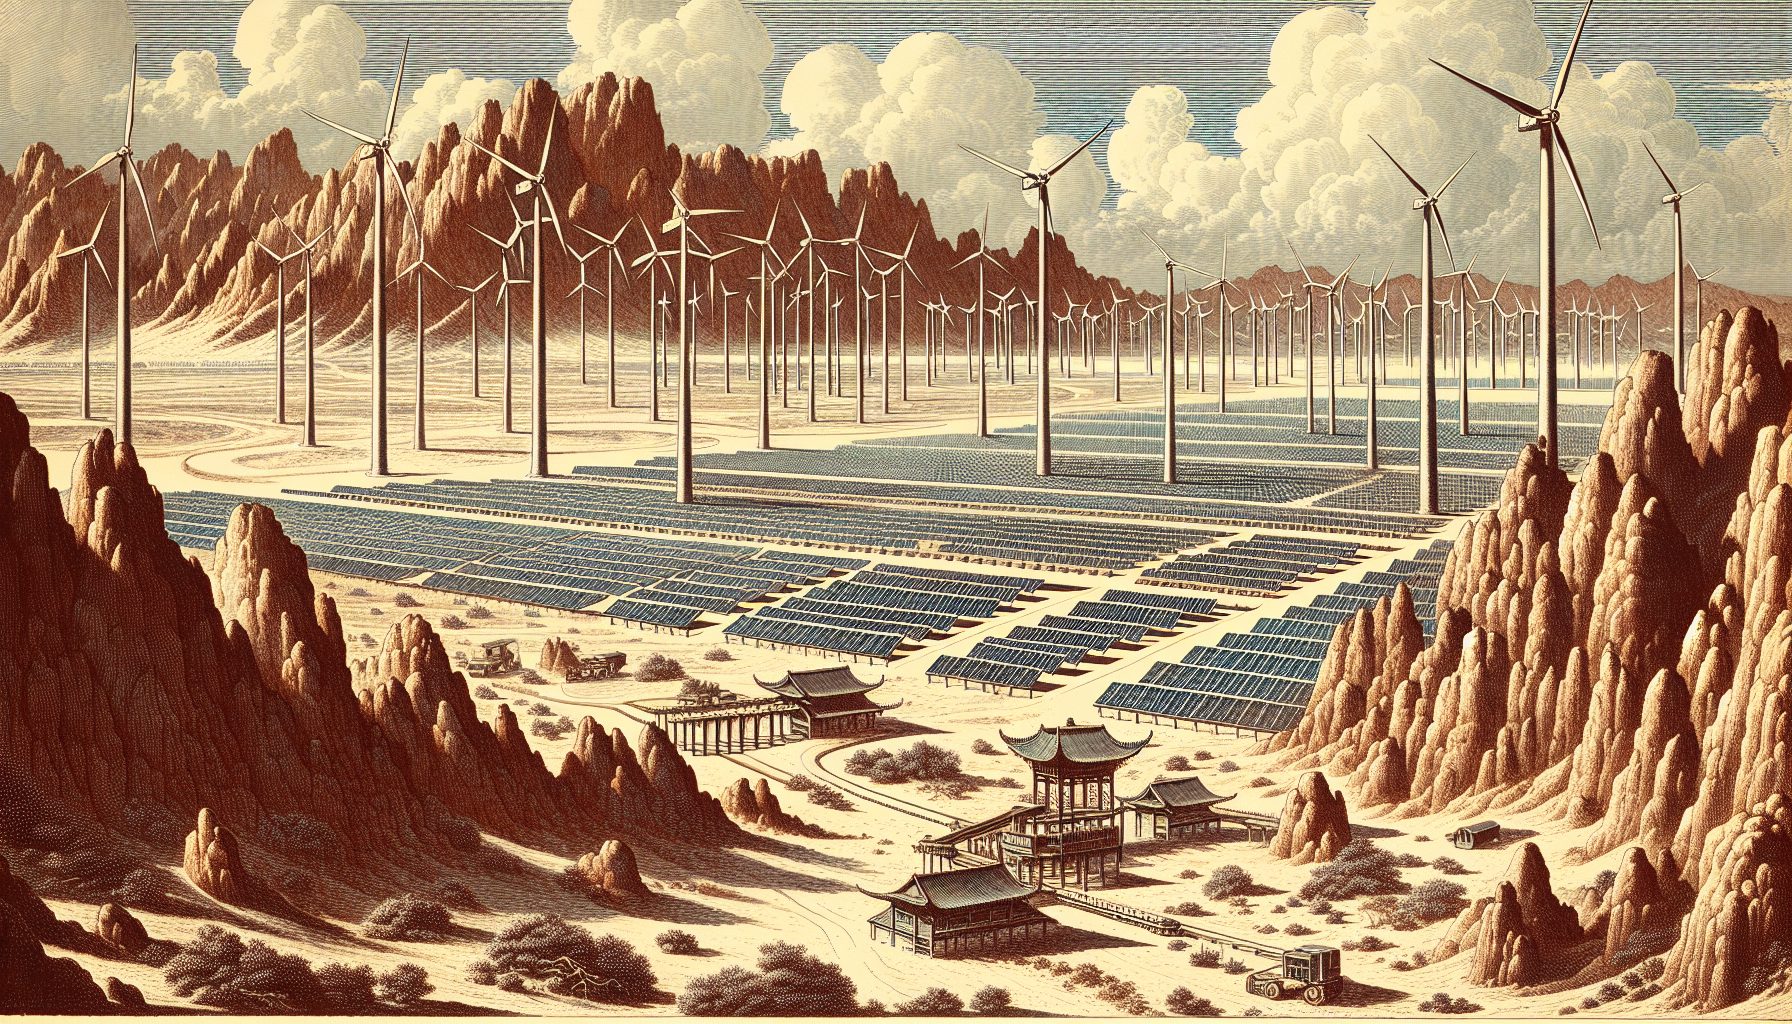 Desert Energy Transformation